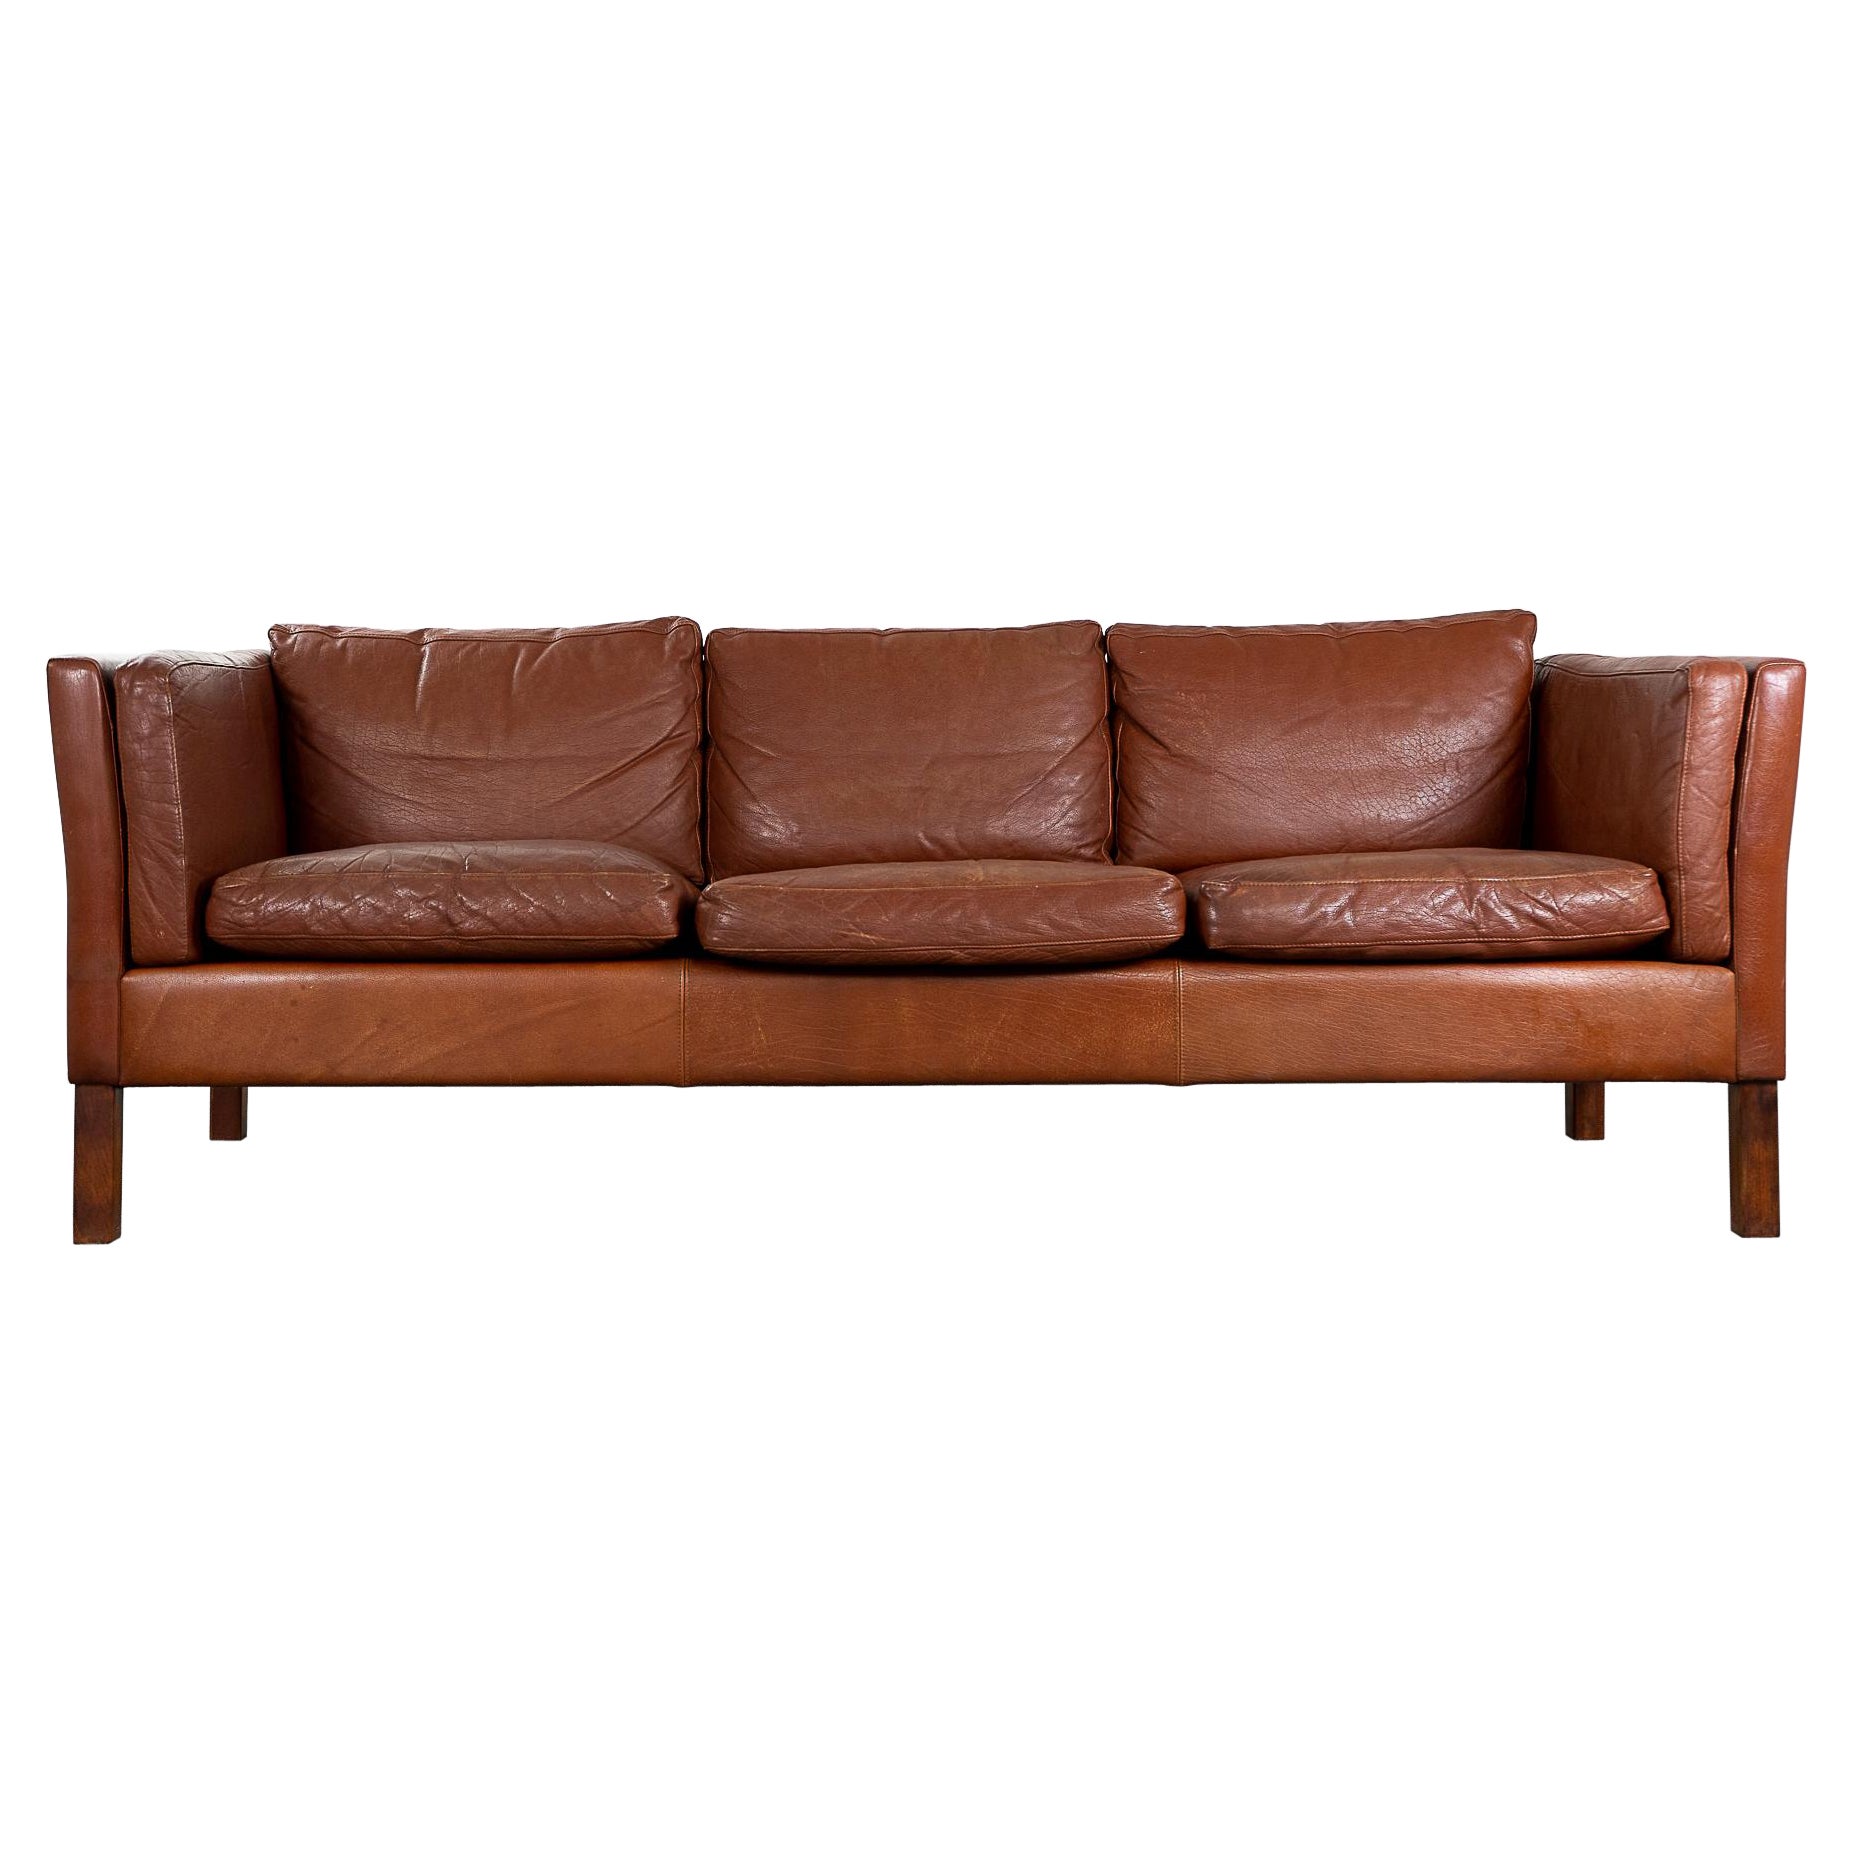 Danish Modern Brown Leather Three Seat Sofa